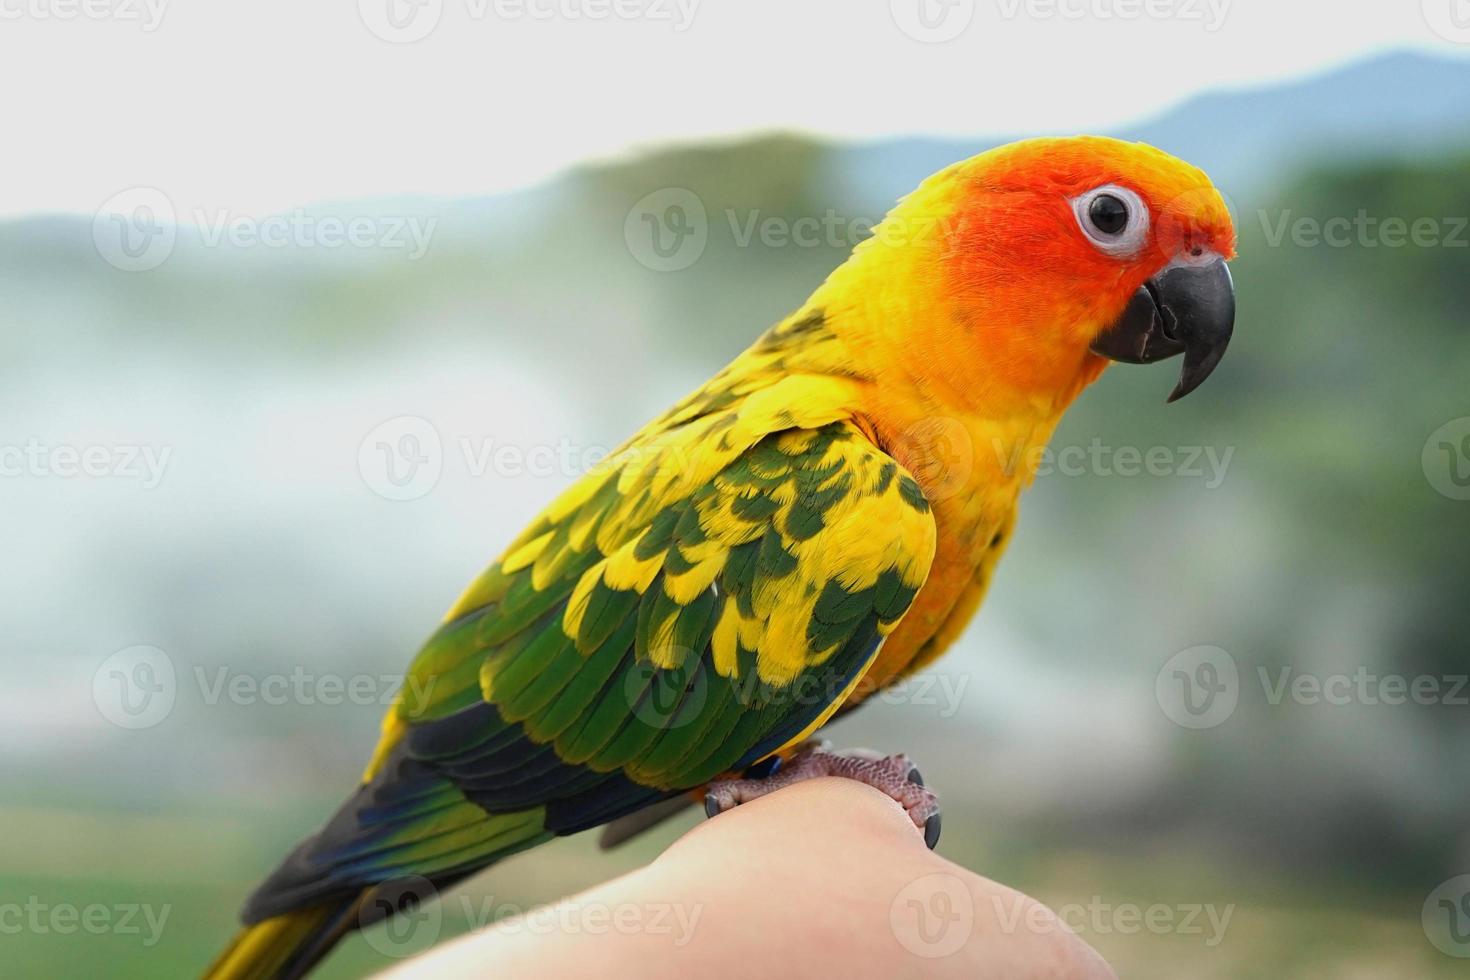 zon papegaaiachtigen papegaai of vogel mooi is aratinga heeft geel op hand achtergrond vervagen bergen en lucht, aratinga solstitialis exotisch huisdier schattig, inheems in amazone foto